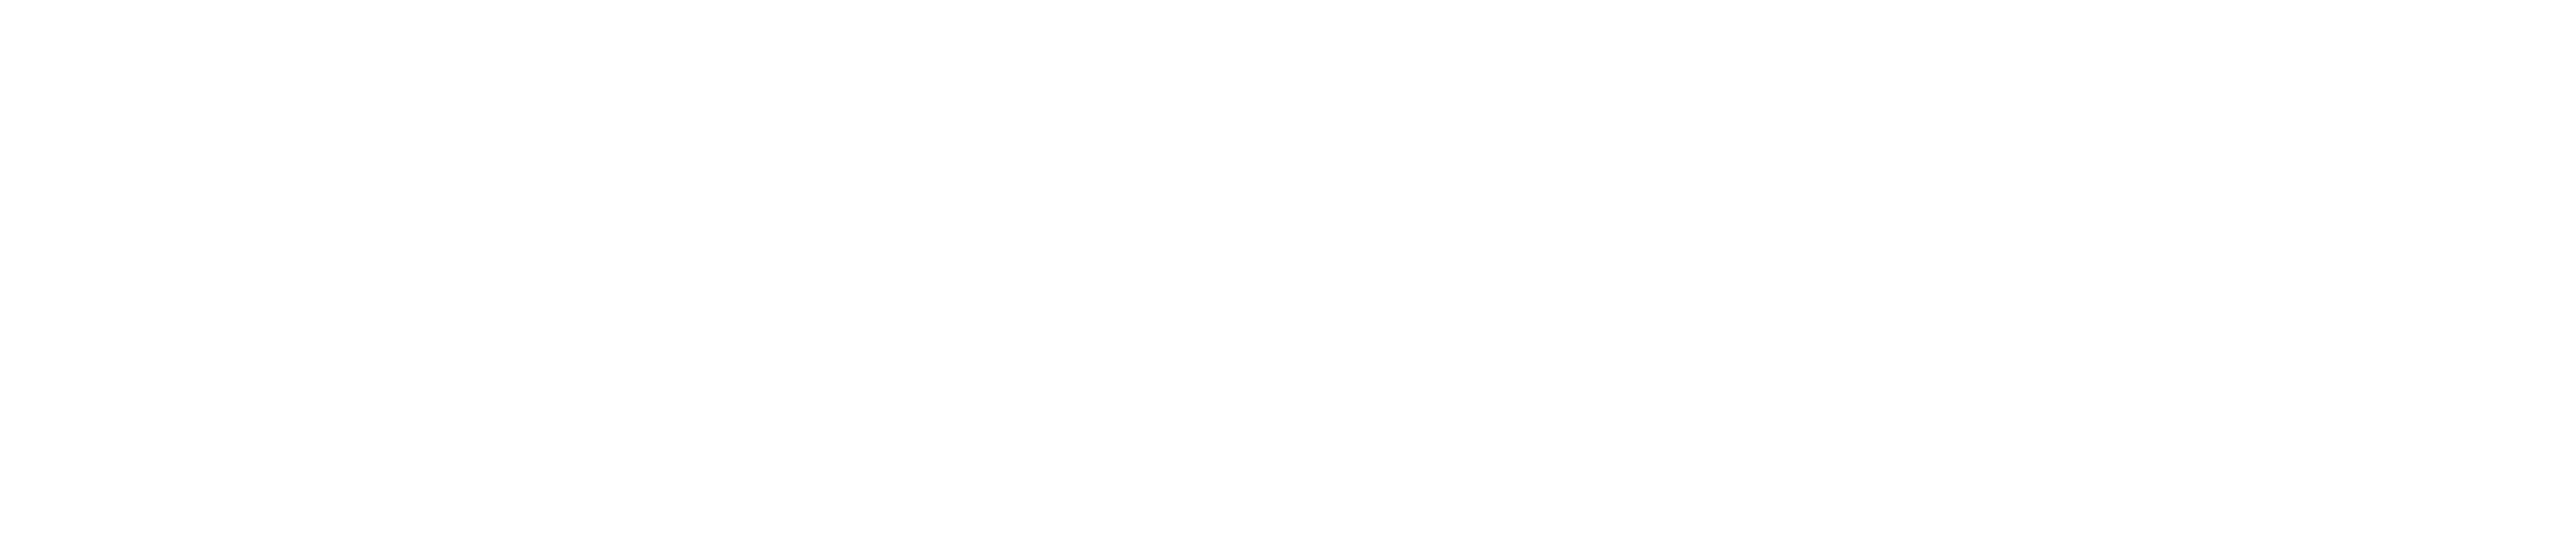 Herbert Davis Removals